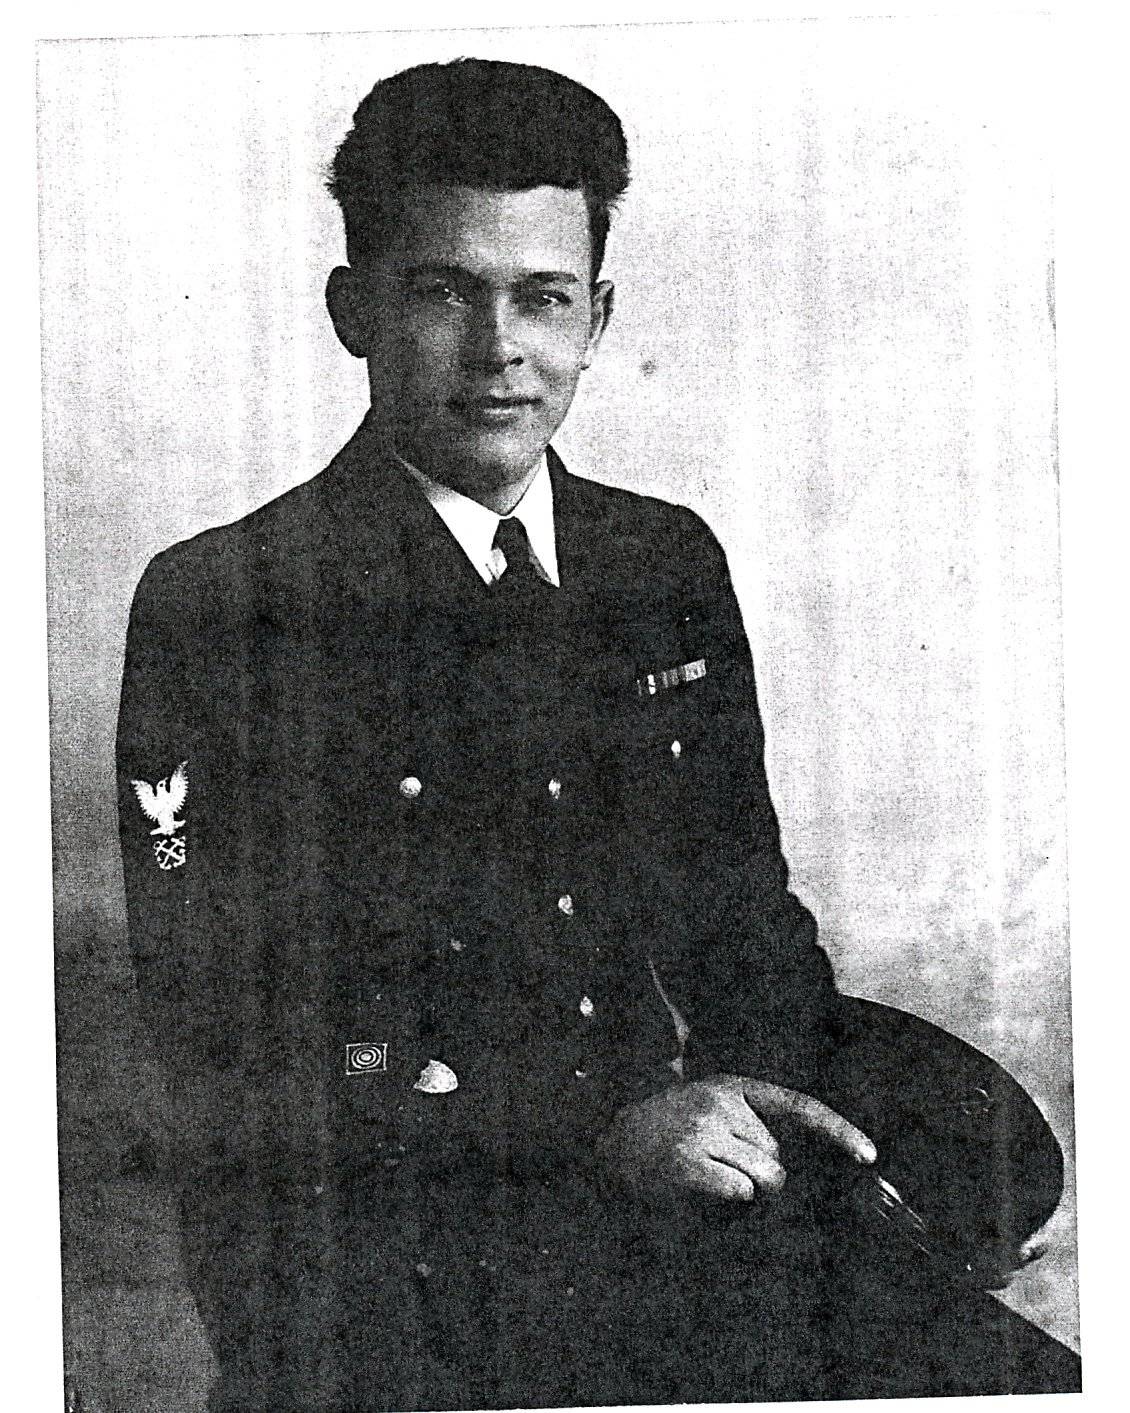 Ira Lewis in Life-saving Service, 1938